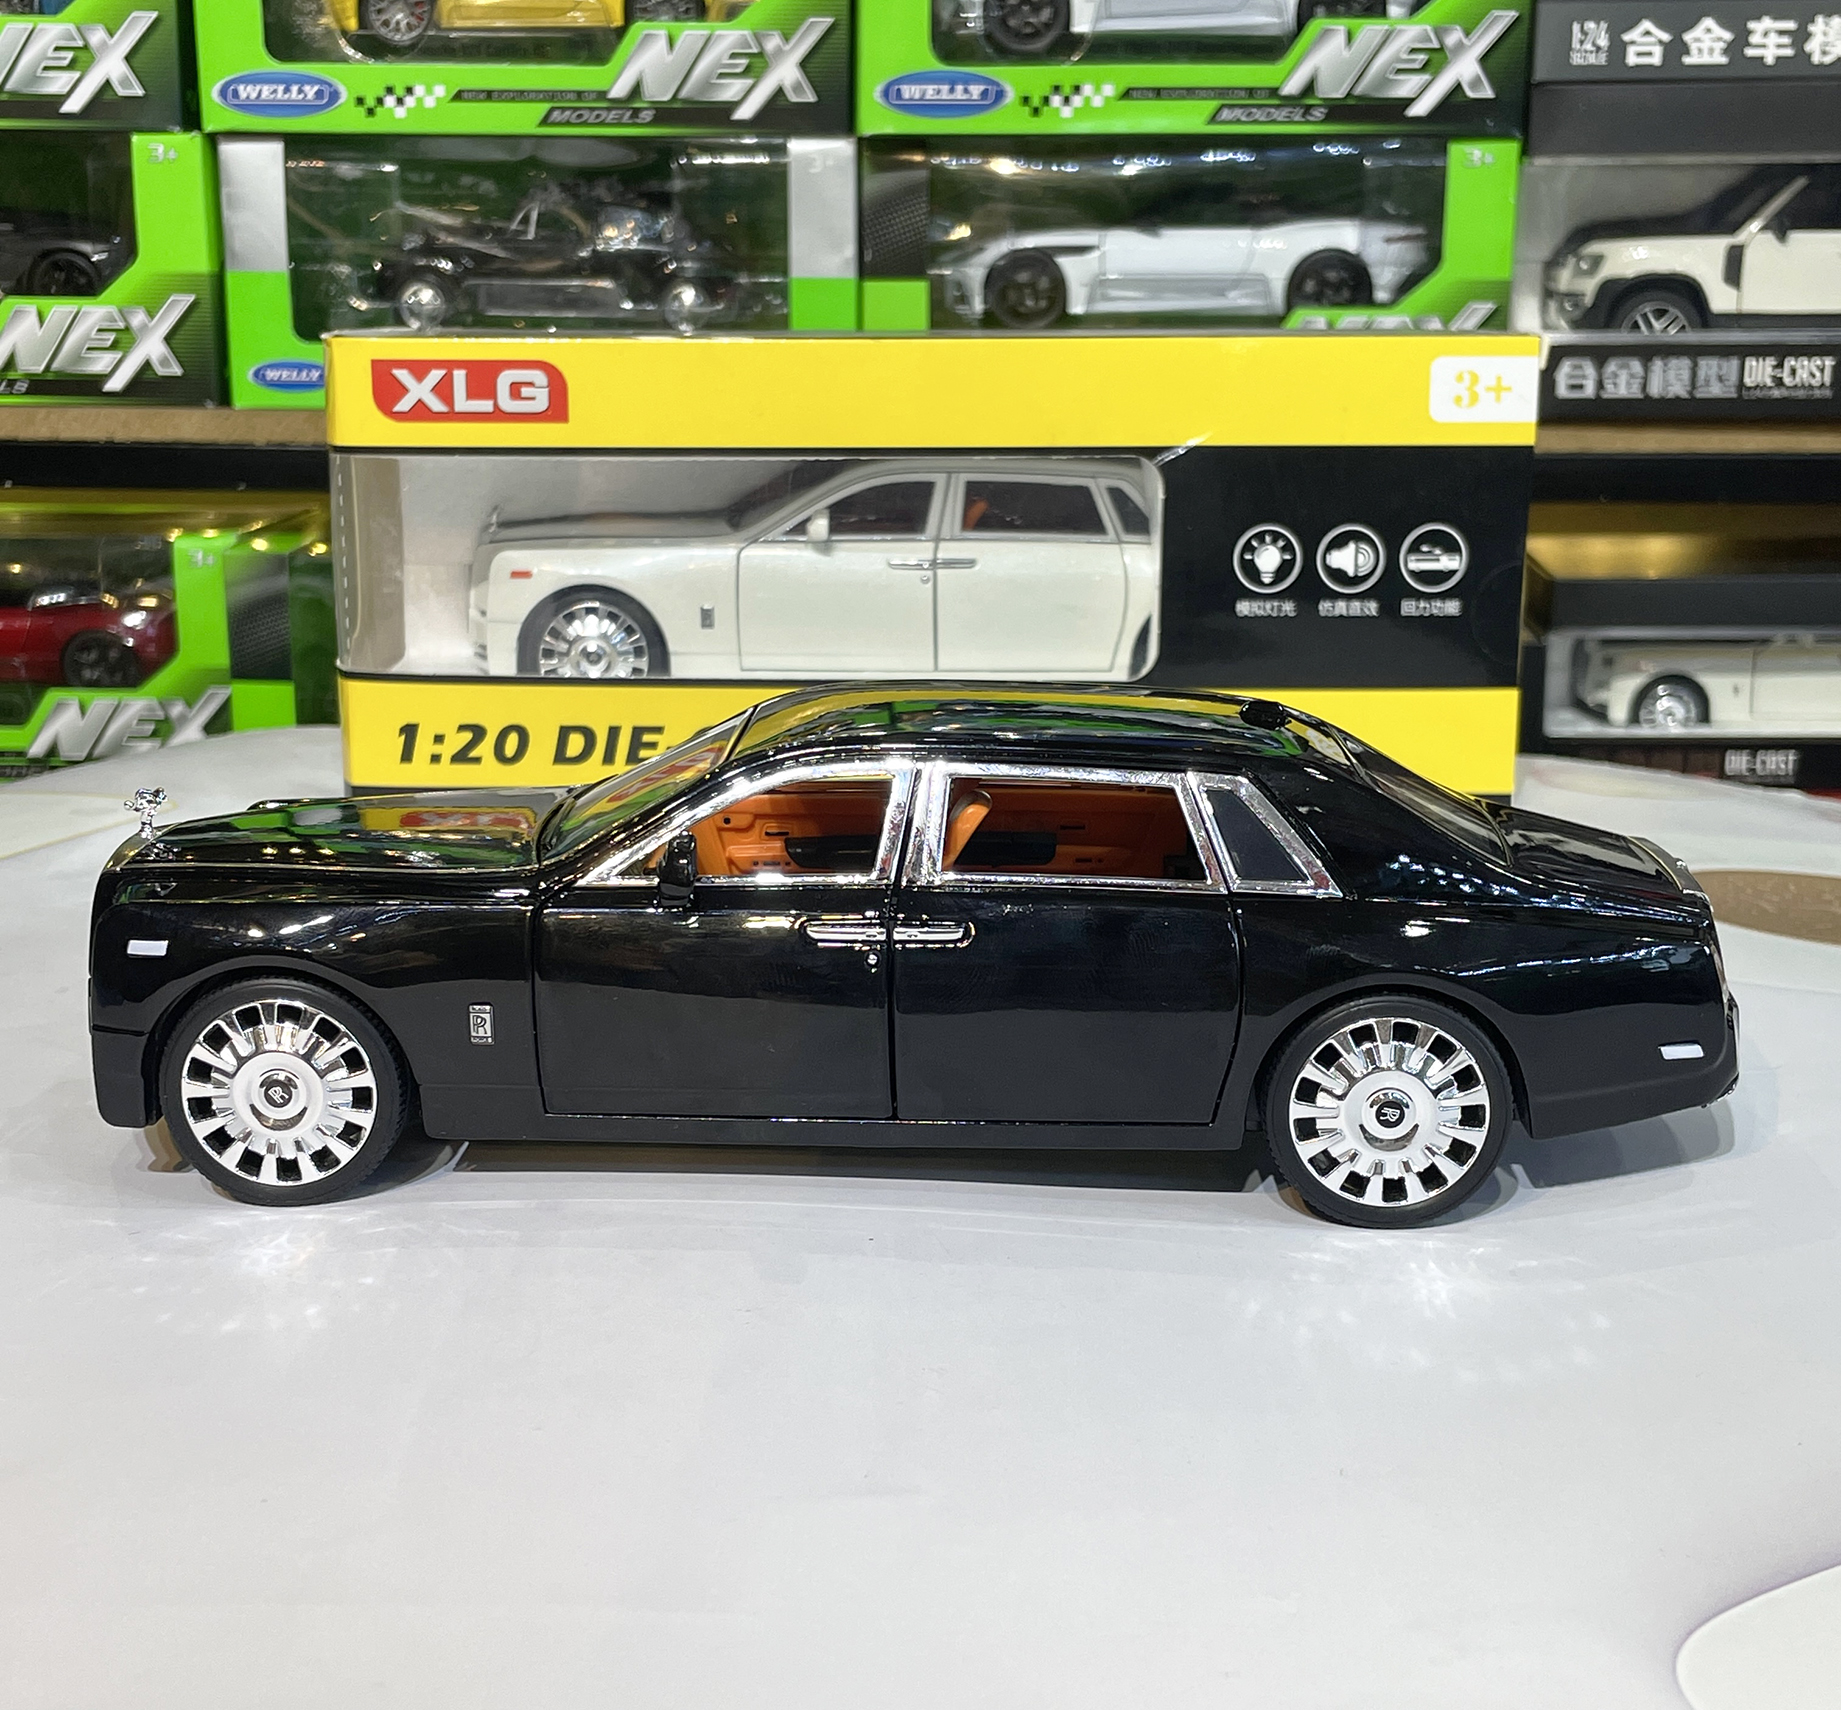 Mô hình xe bằng kim loại Rolls-Royce Phantom 8 tỉ lệ 1:20 hãng XLG 3 màu